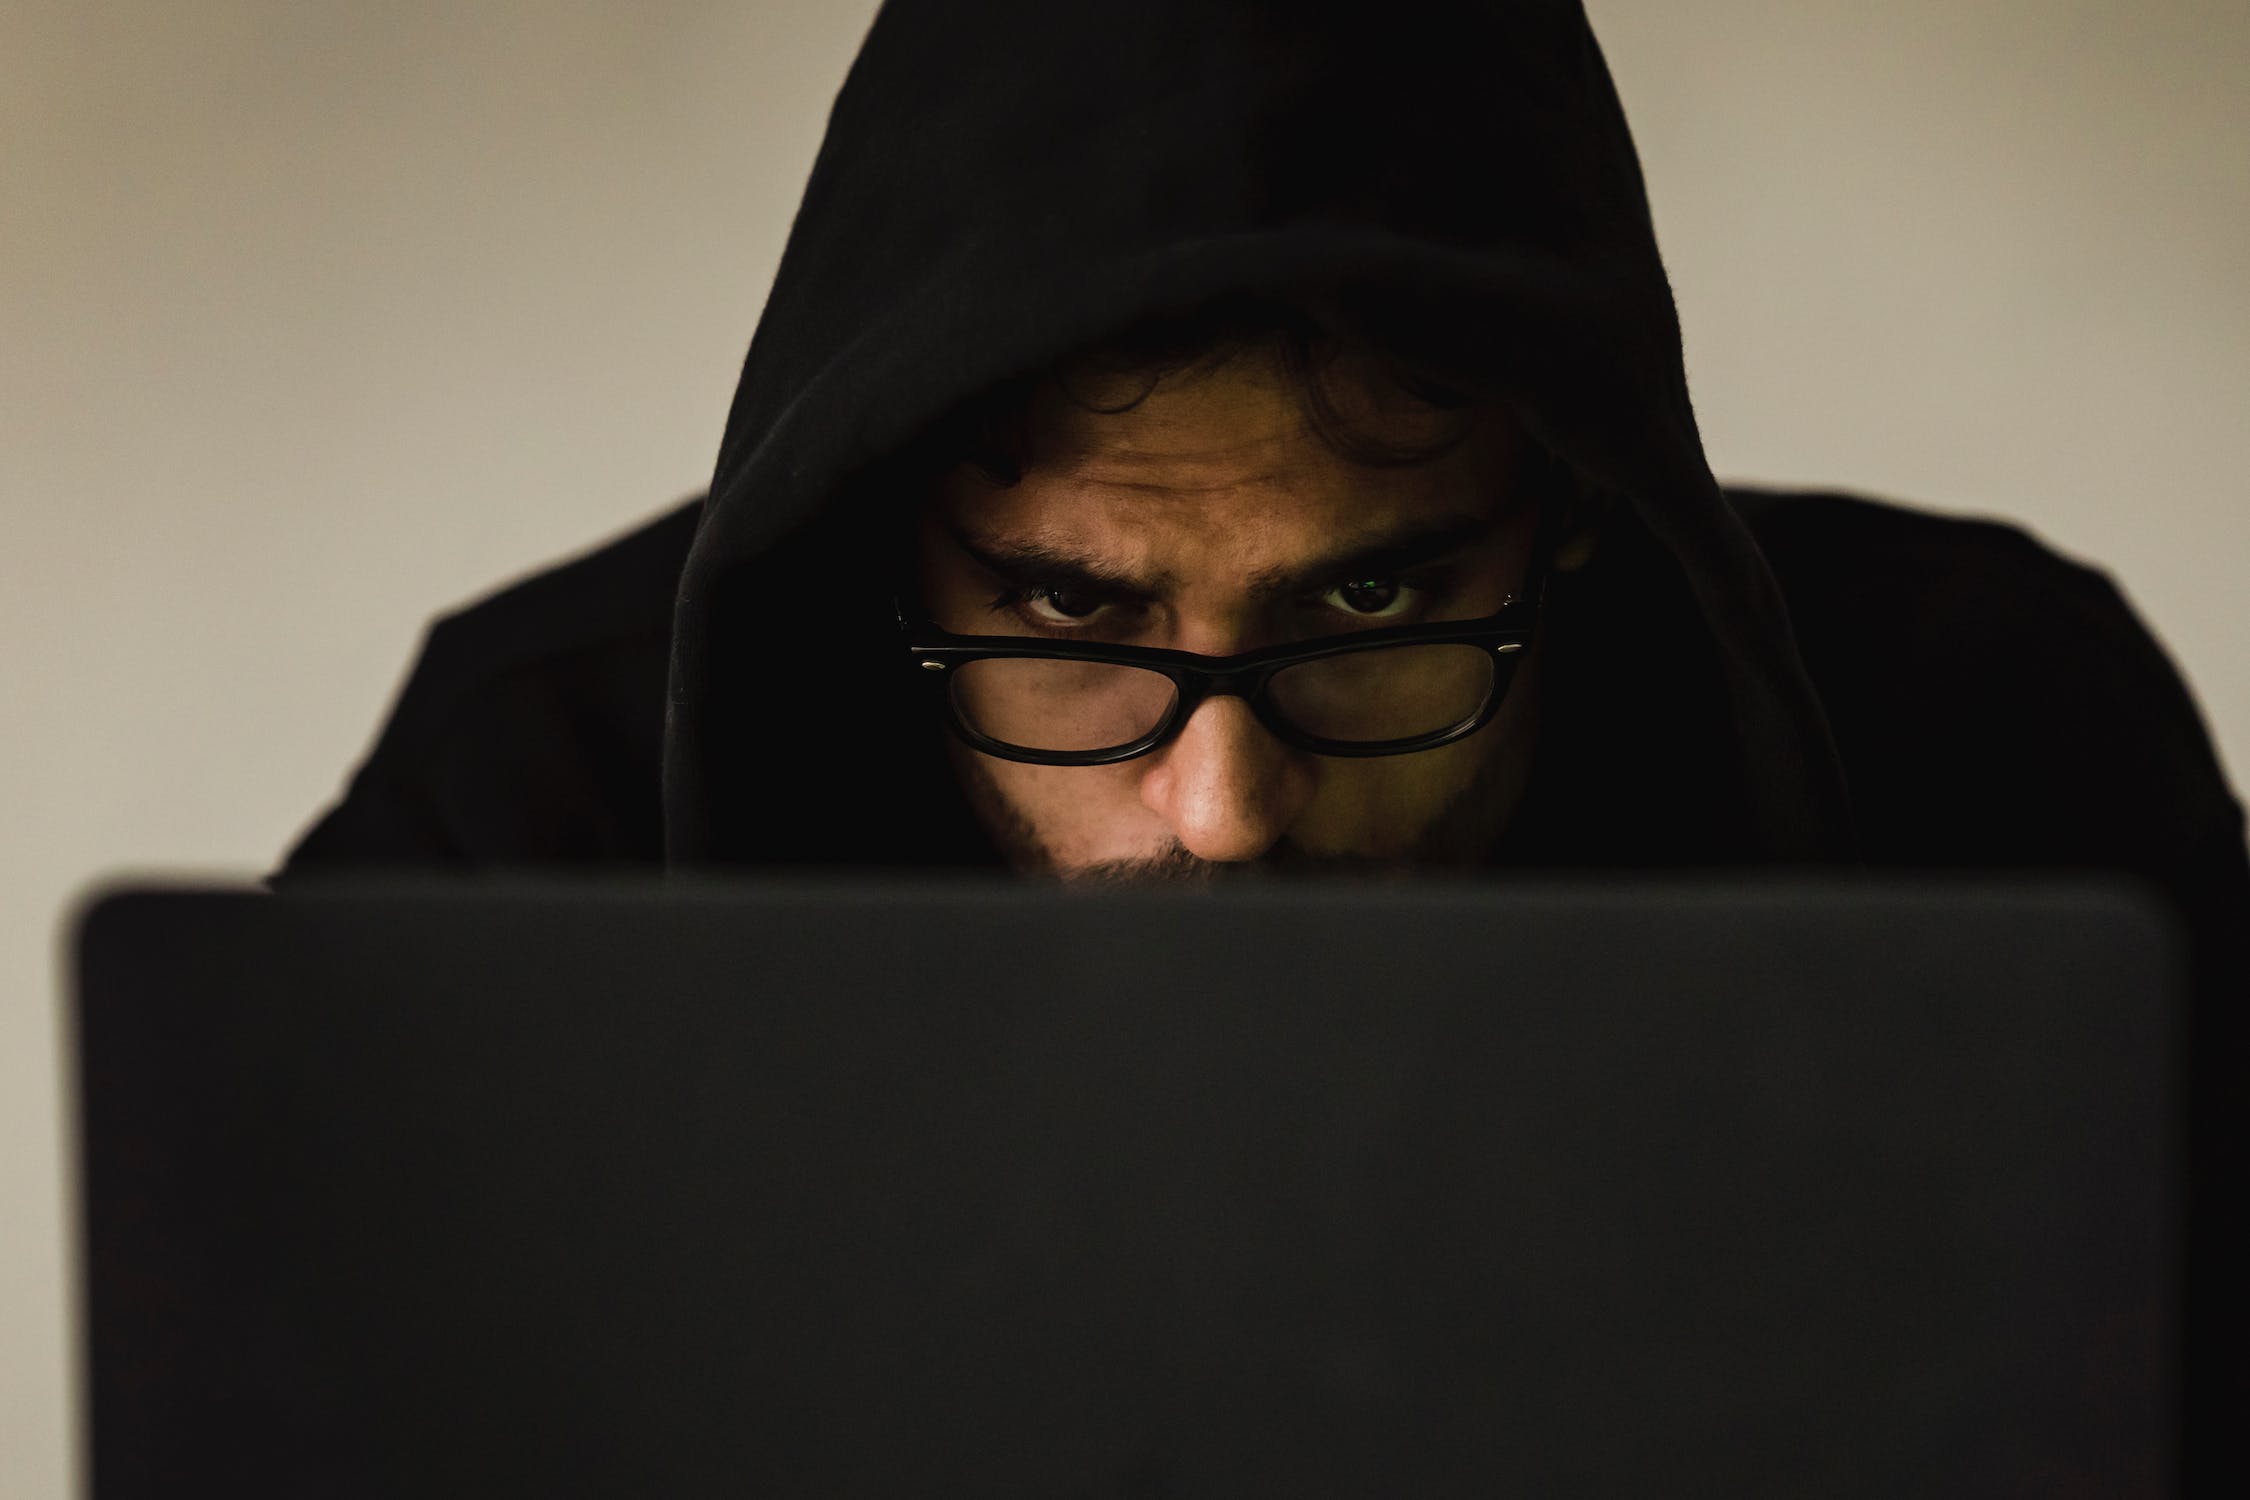 Mann mit Brille sitz vor dem Laptop und hat eine Kapuze auf. Er will Pornosucht bekämpfen.